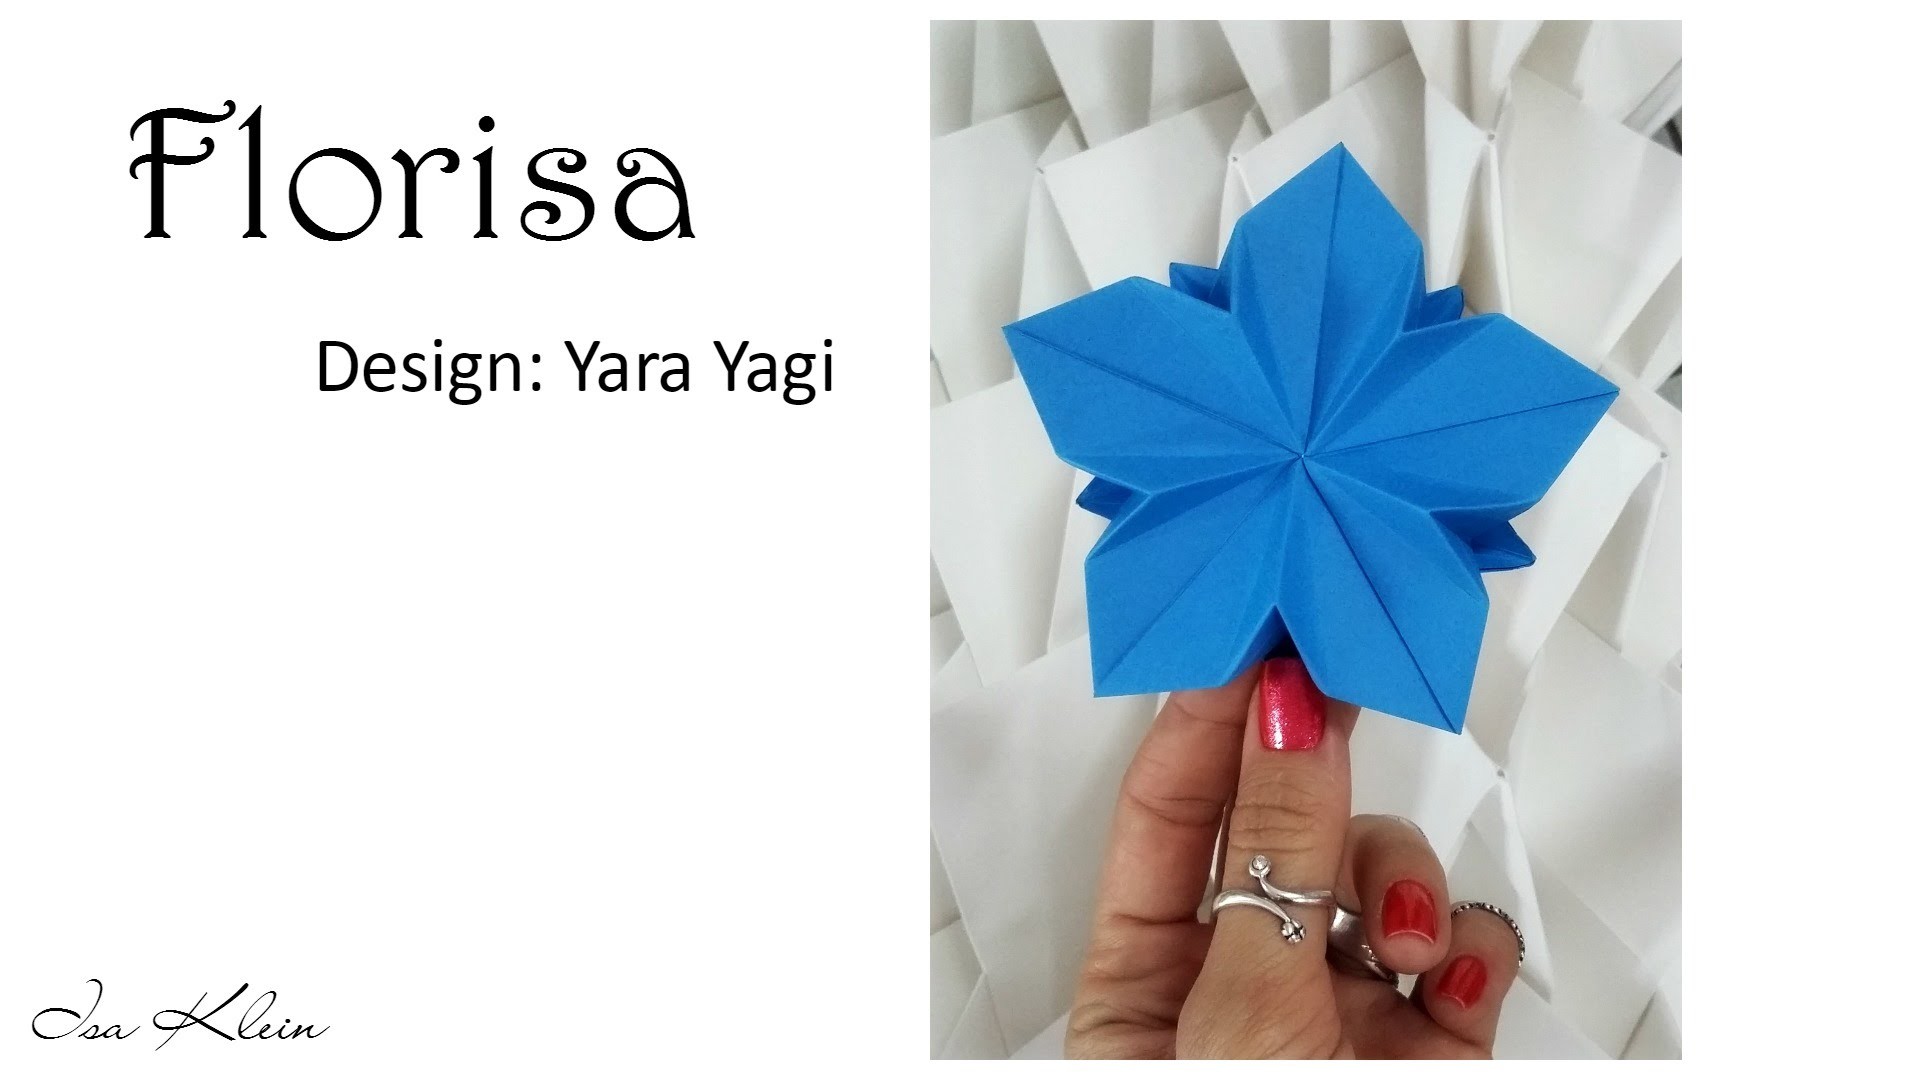 Florisa, by Yara Yagi